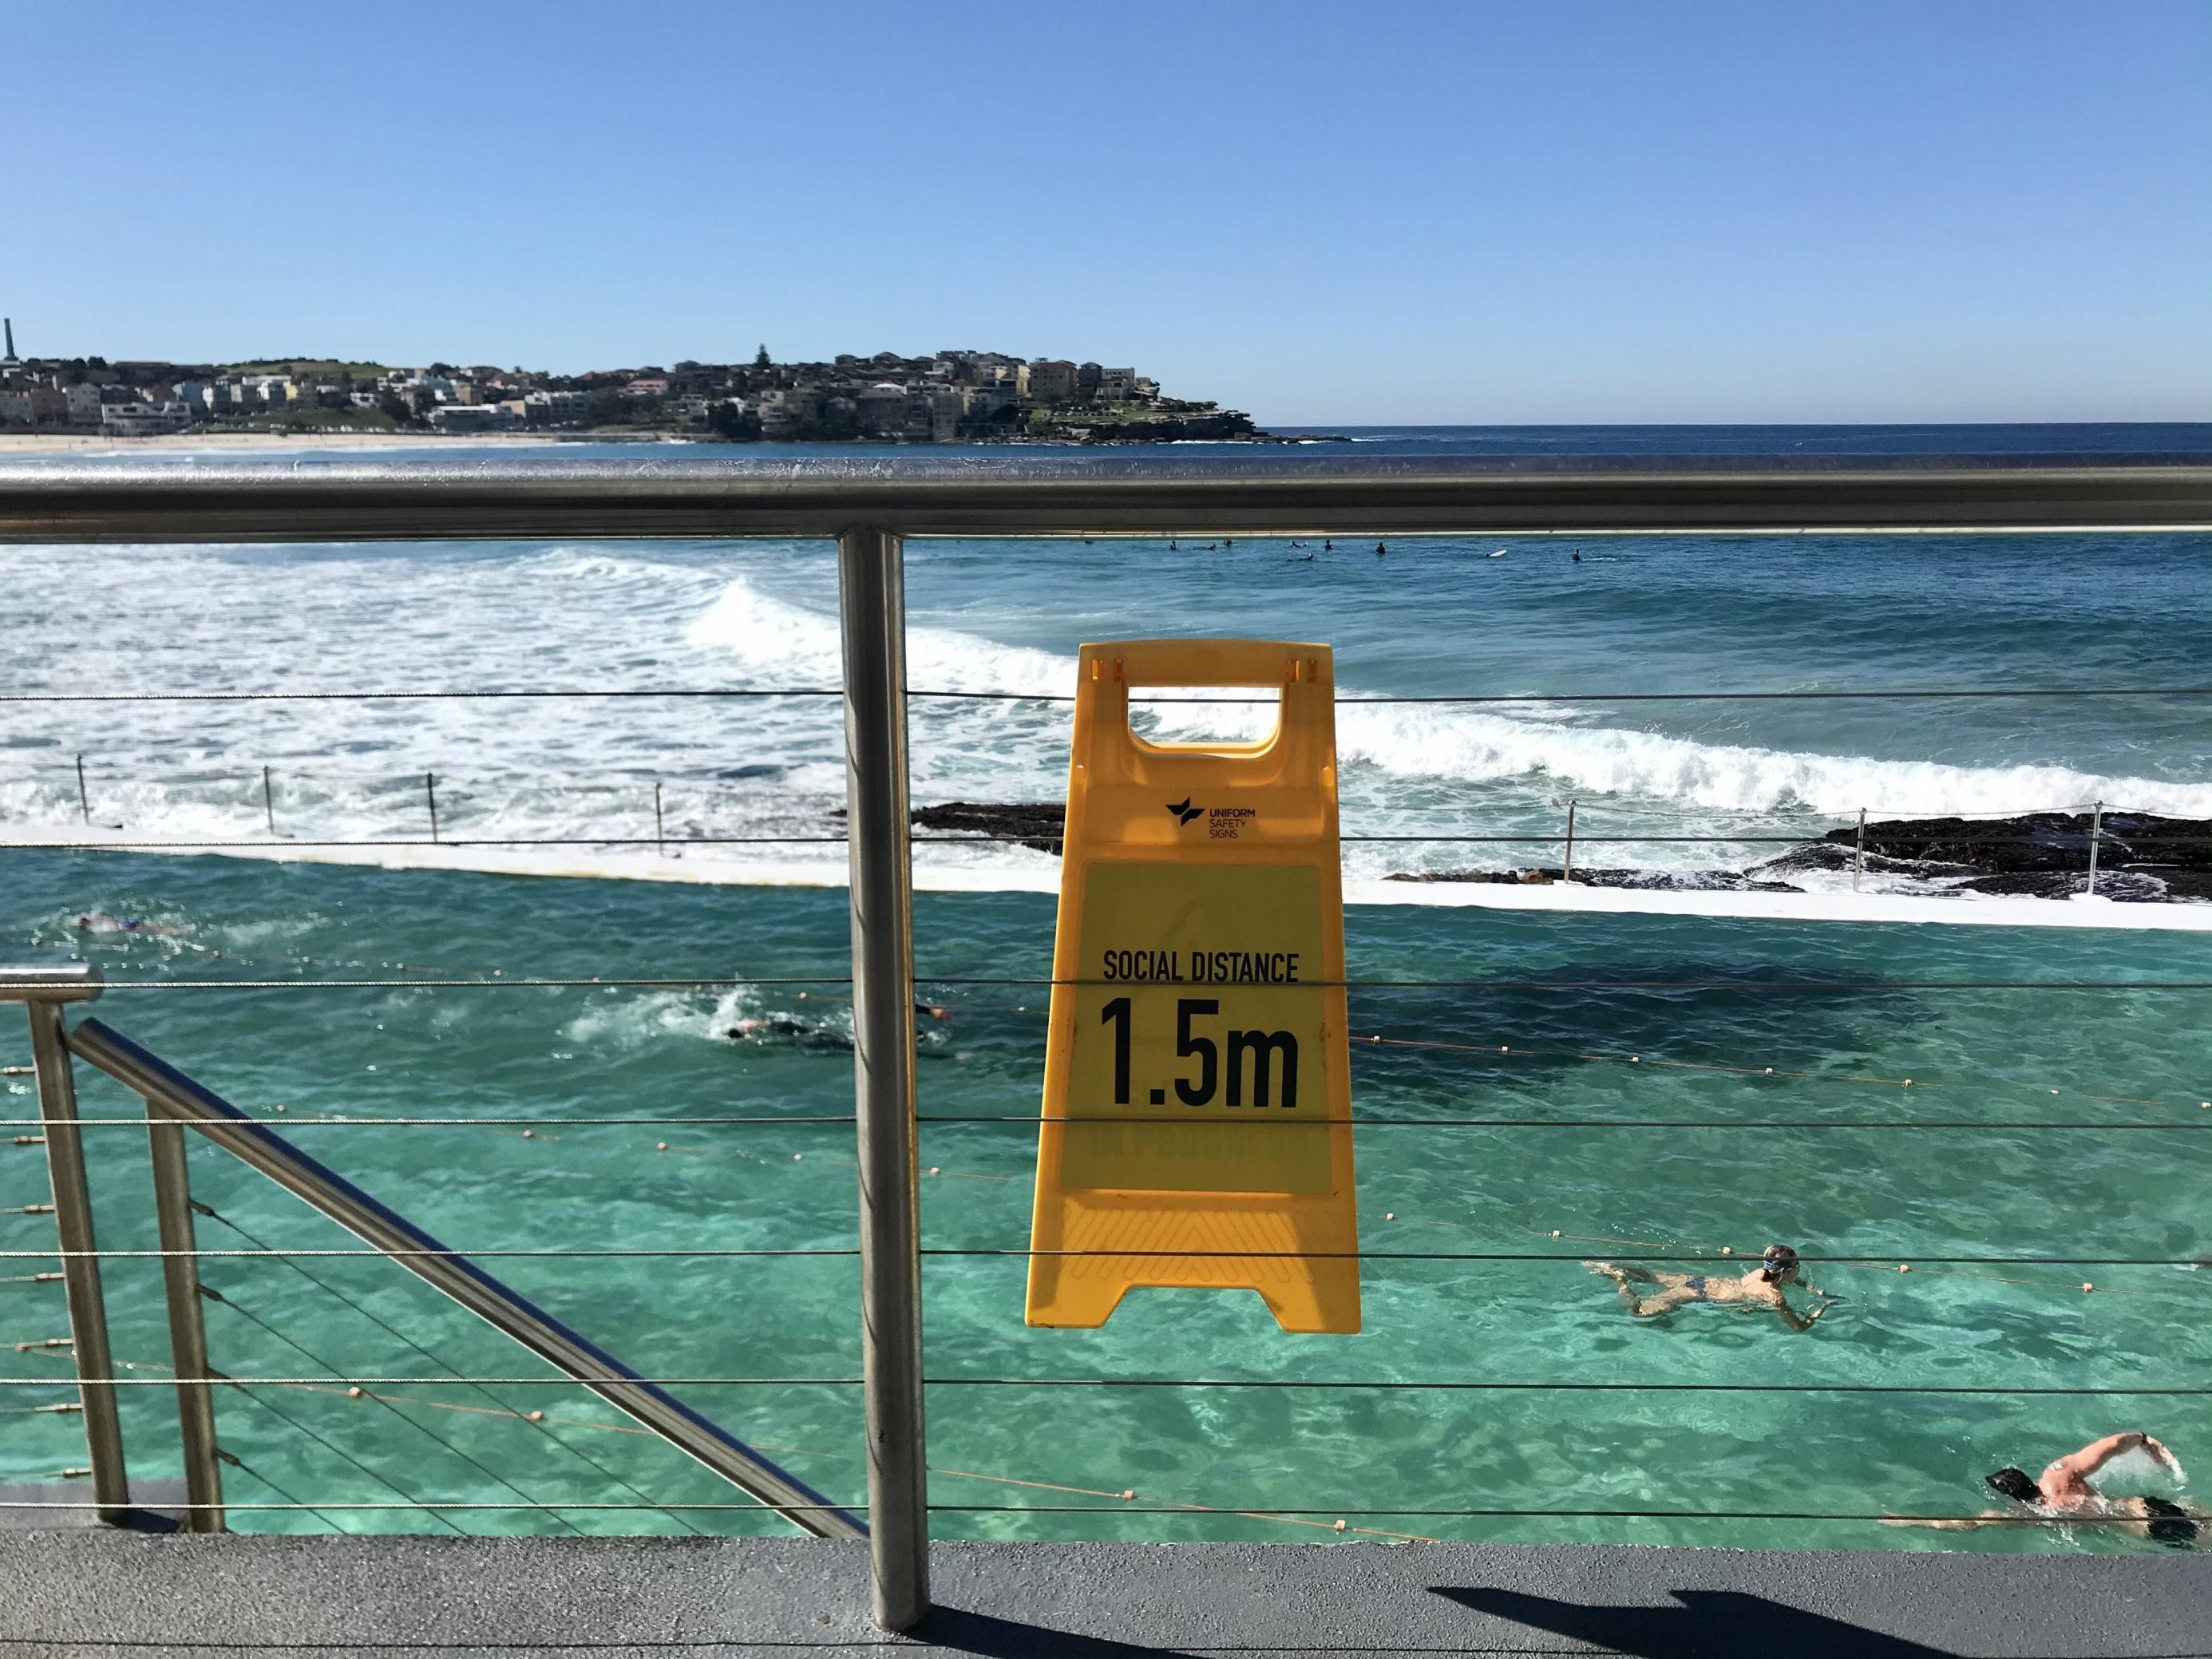 Im Meeresschwimmbad 'Icebergs' in Sydneys Strandvorort Bondi Beach ziehen Krauler ihre Bahnen. Ein Schild erinnert daran, 1,5 Meter Abstand zu anderen Menschen zu halten. In der letzten Juniwoche geht auch das Meeresschwimmbad wieder in den Lockdown.